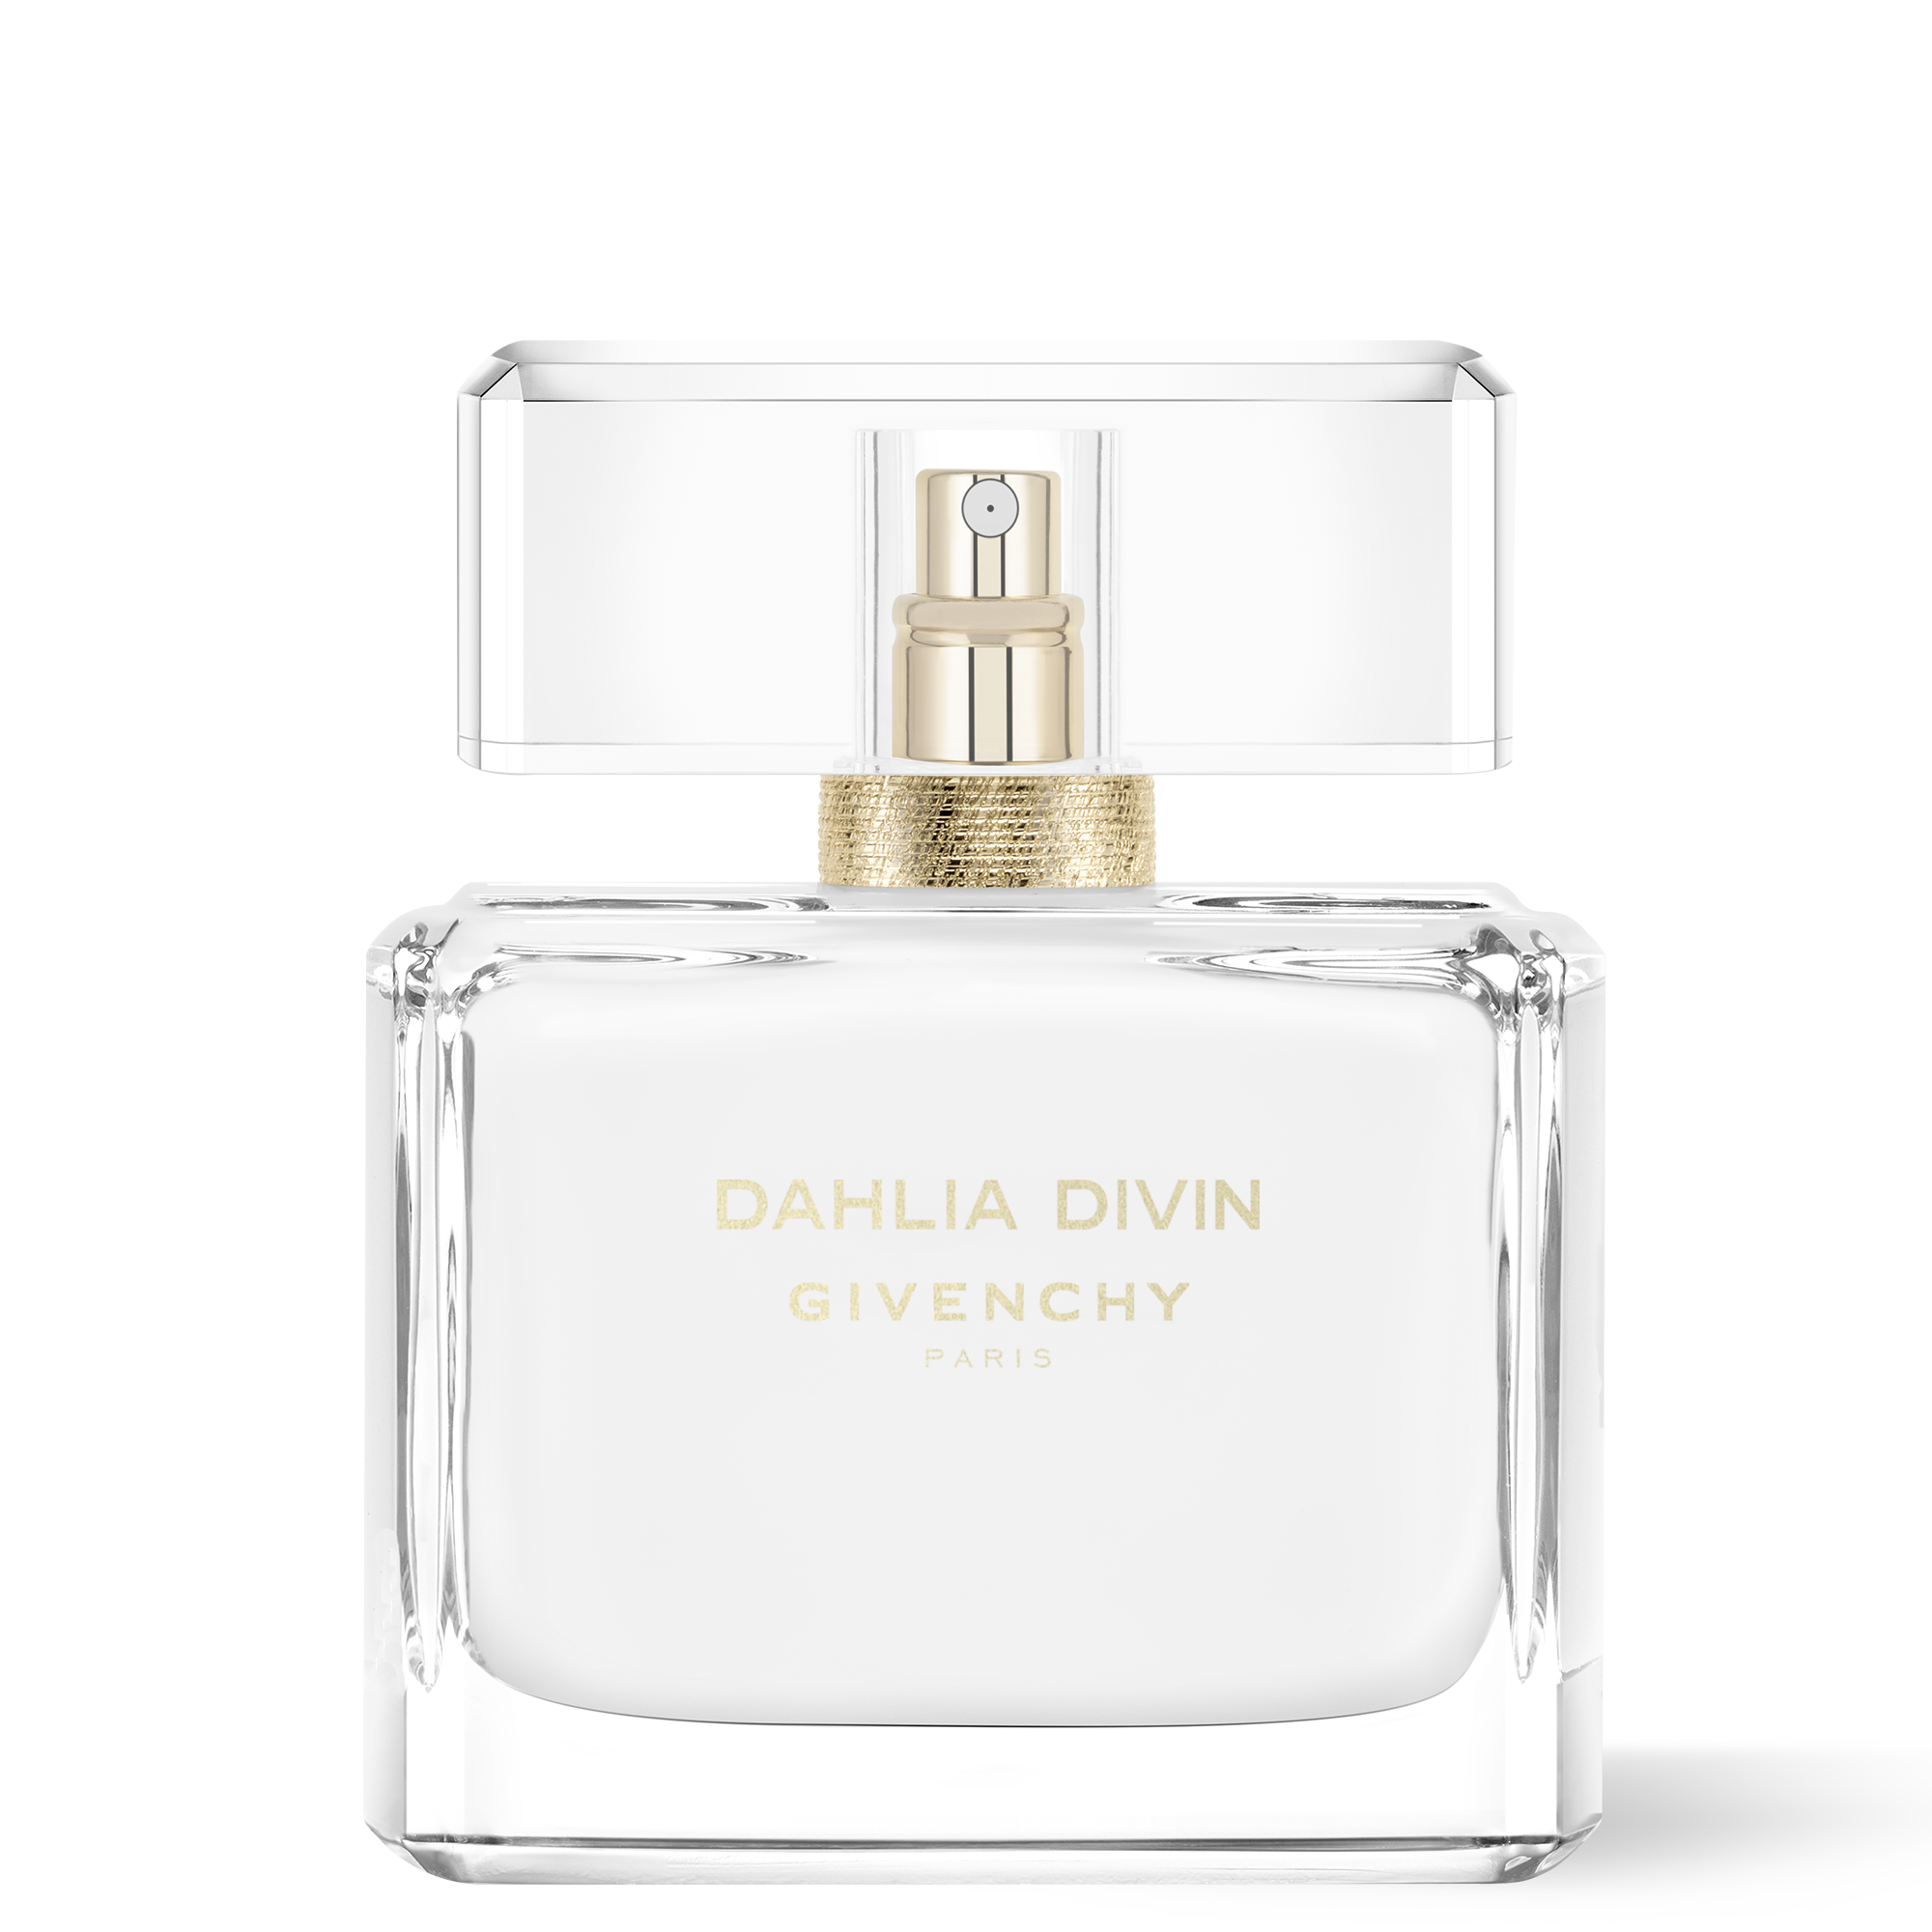 Dahlia Divin Givenchy Eau Initiale Hot Sale, SAVE 30% - online-pmo.com